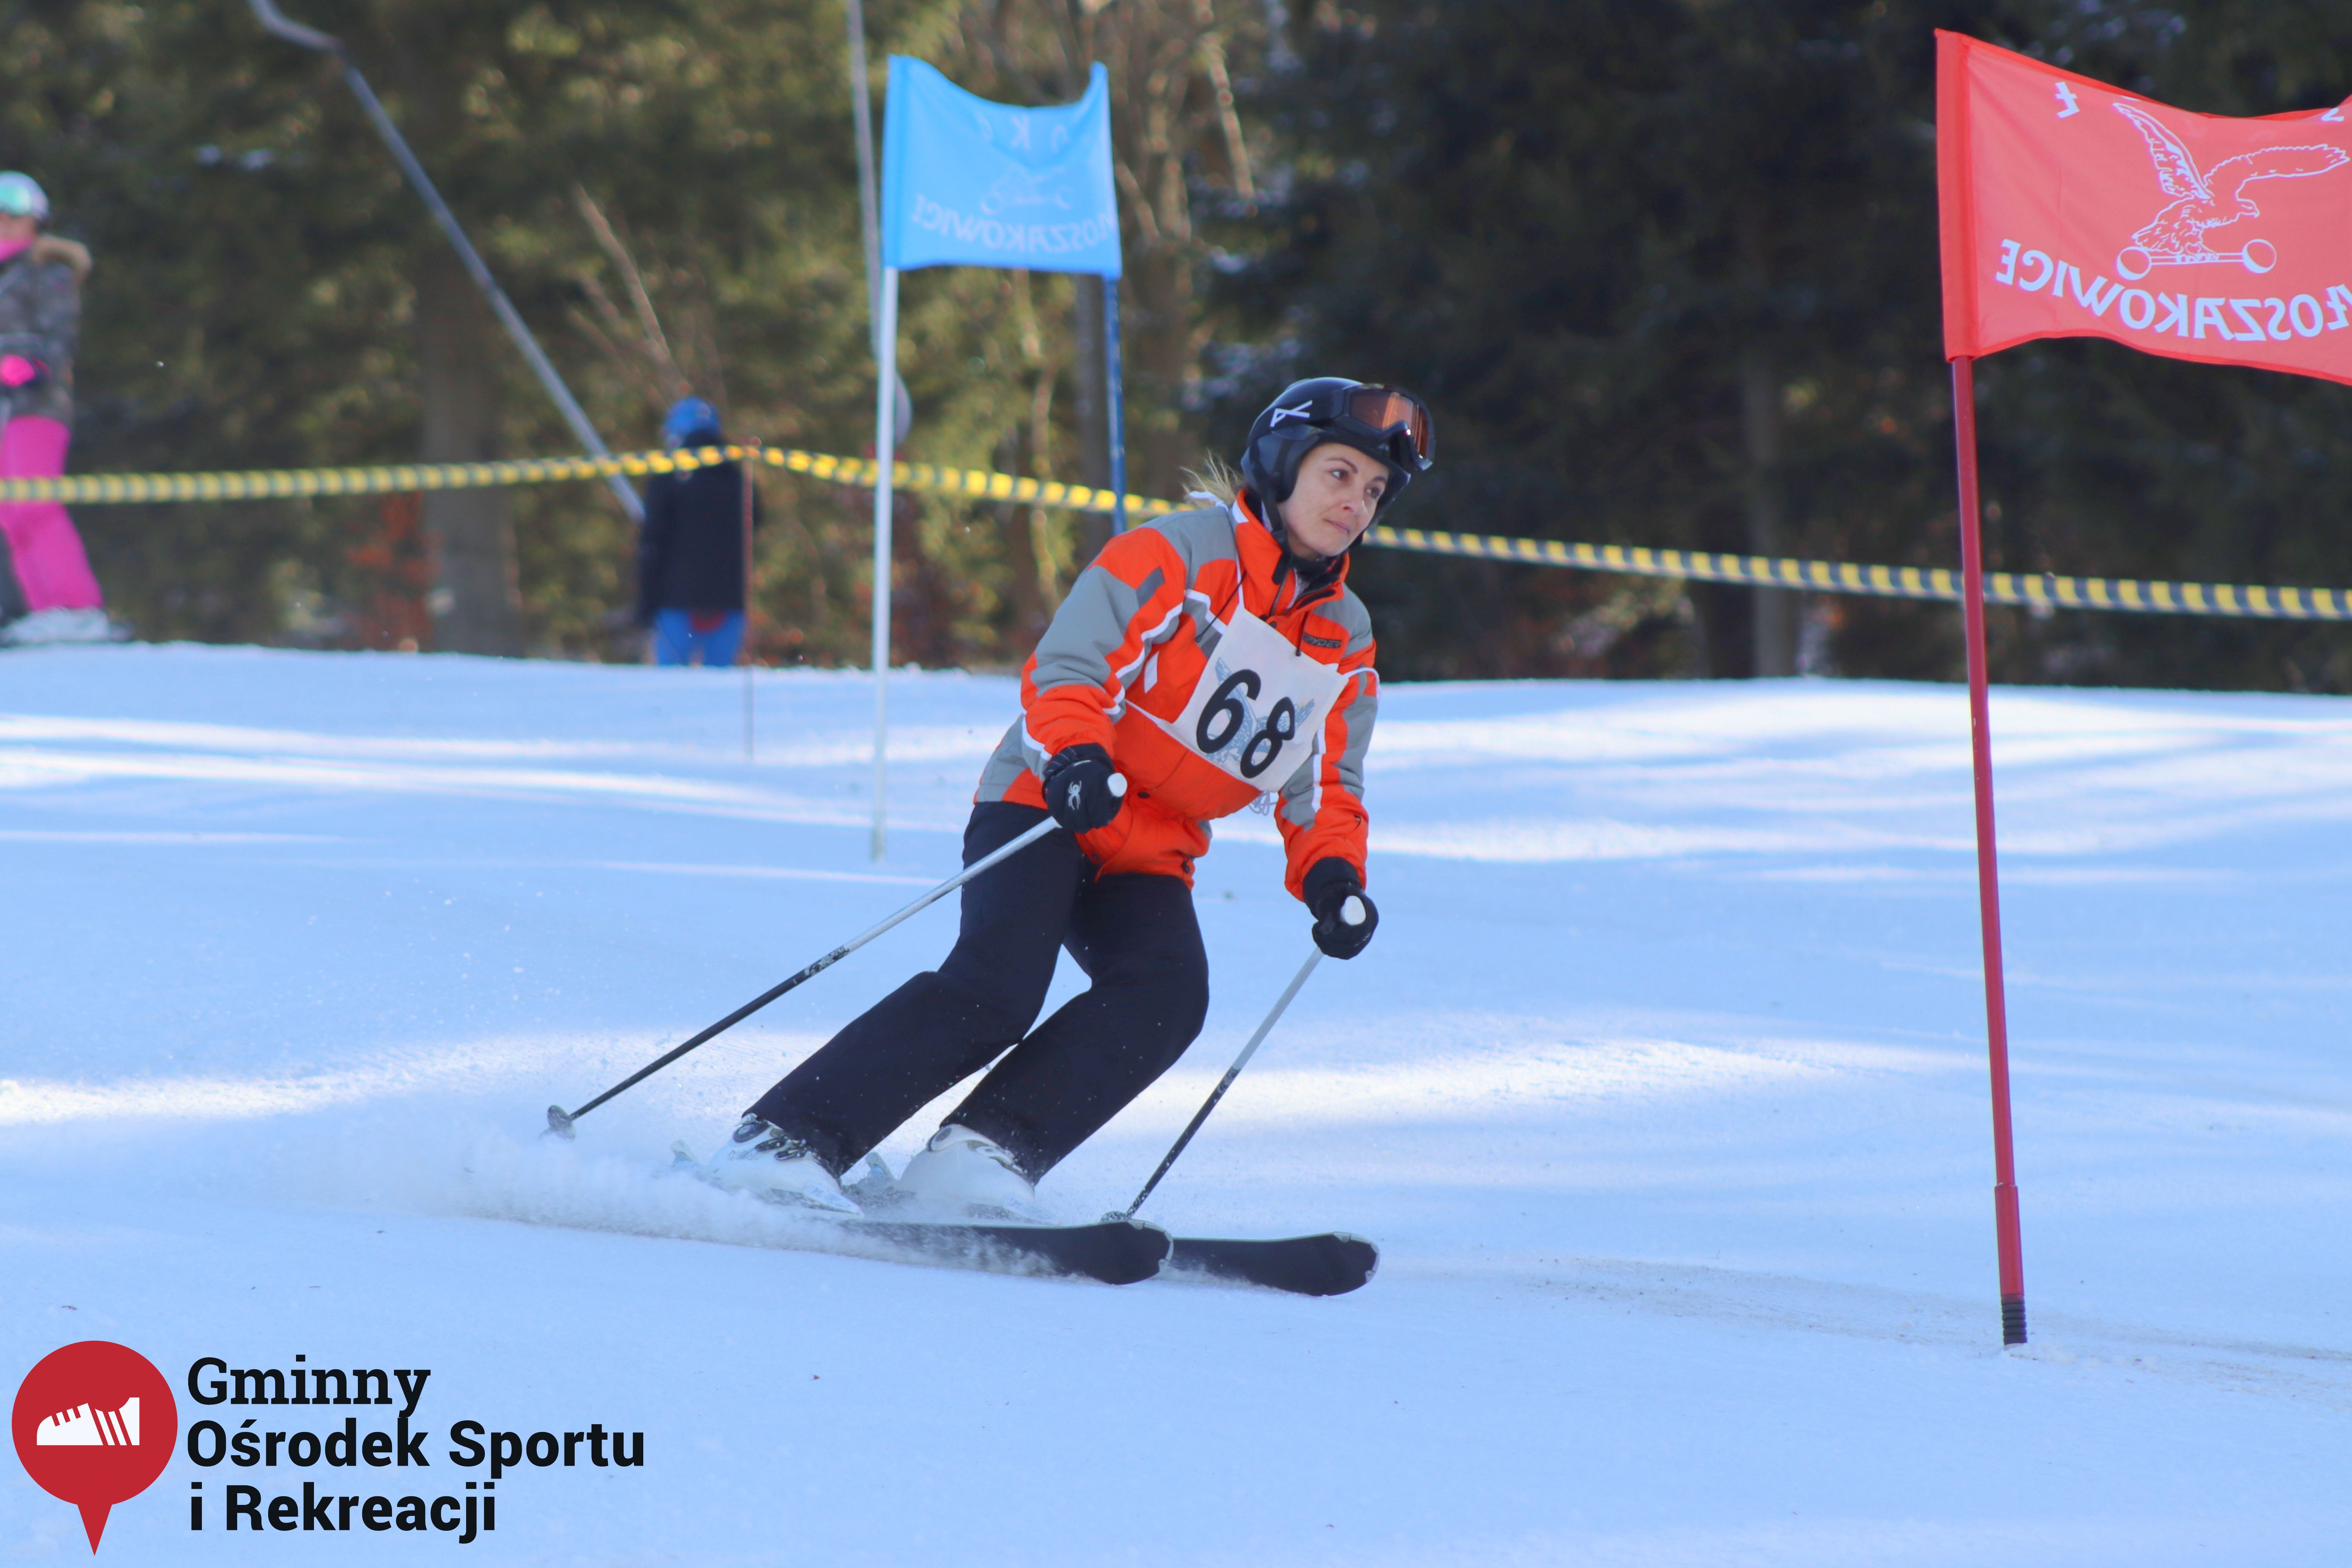 2022.02.12 - 18. Mistrzostwa Gminy Woszakowice w narciarstwie019.jpg - 1,22 MB